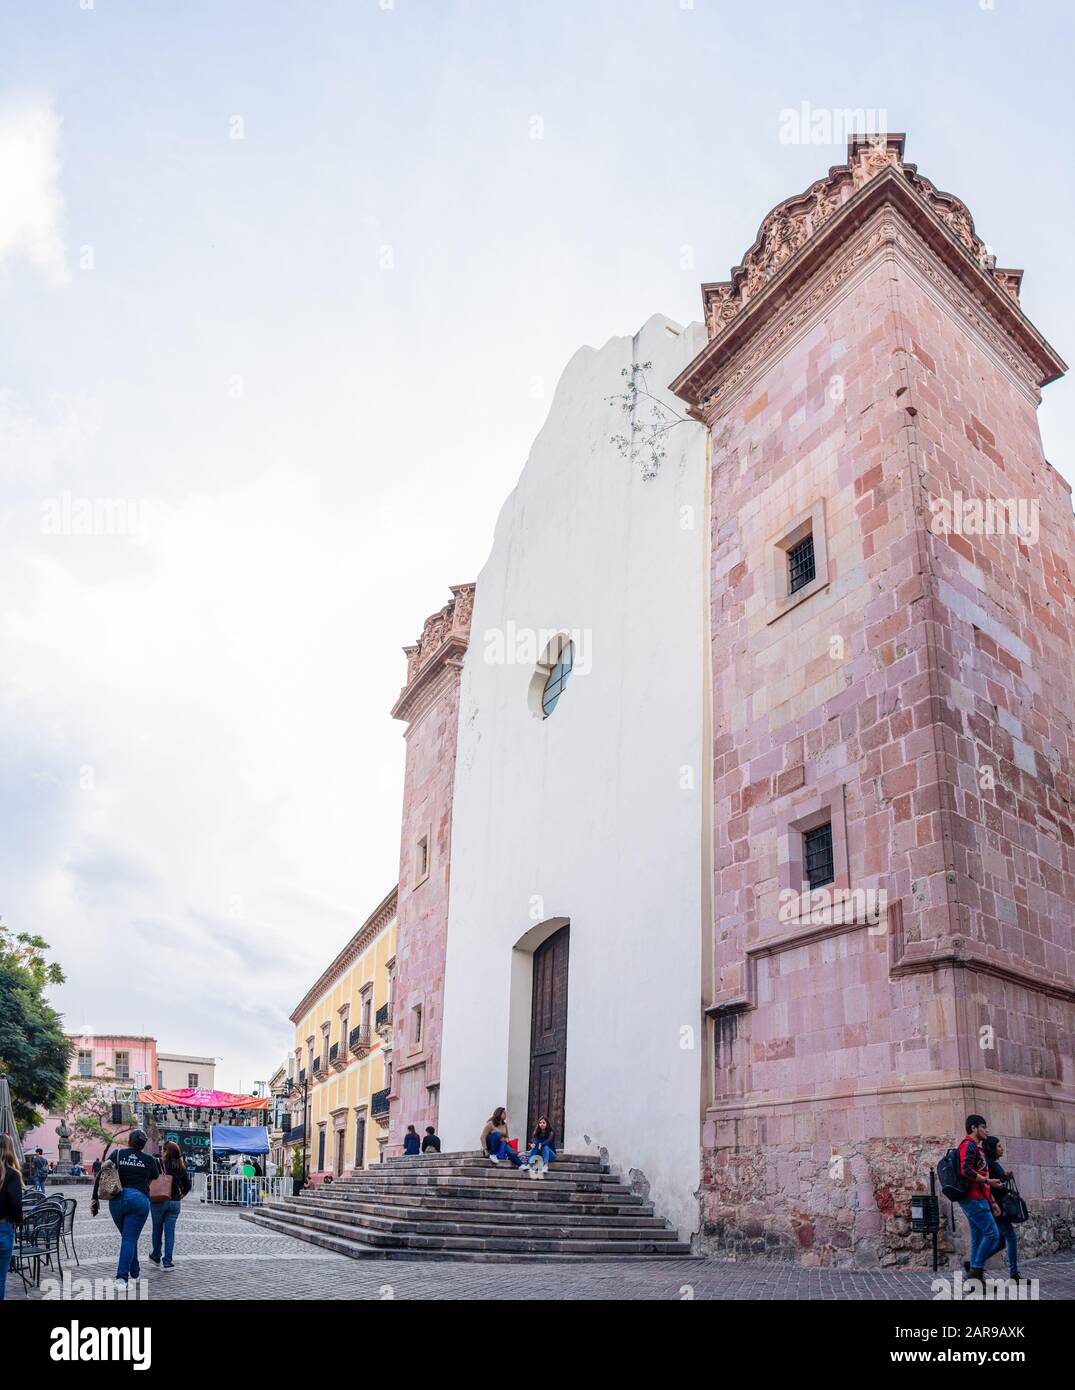 Zacatecas, Zacatecas, Mexiko - 22. November 2019: Menschen, die am ehemaligen Templo de San Agustín, heute ein Museum, ruhen und spazieren gehen Stockfoto